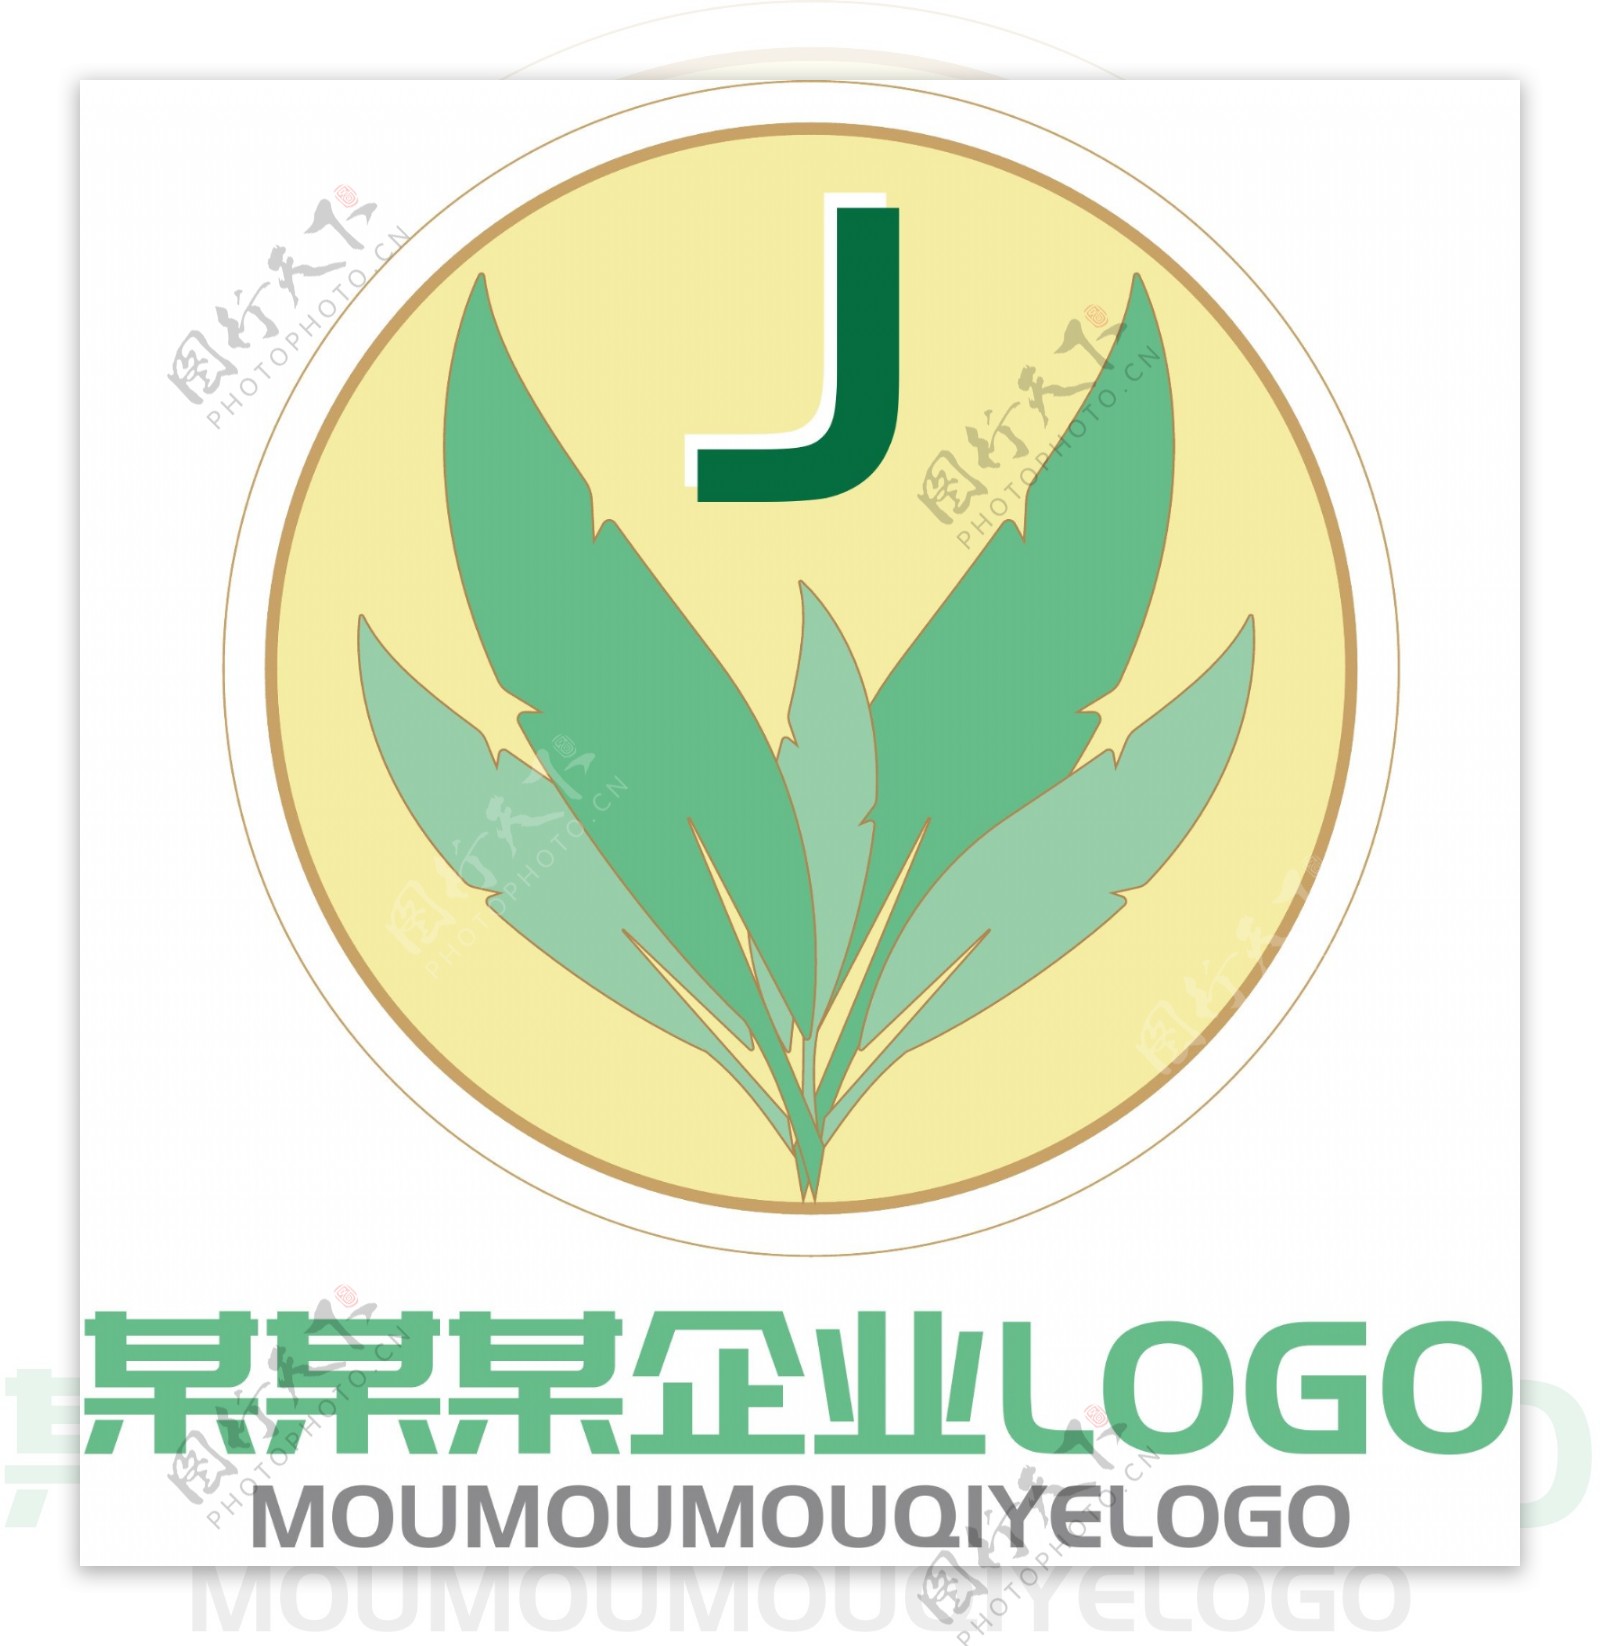 原创黄绿色清新企业logo